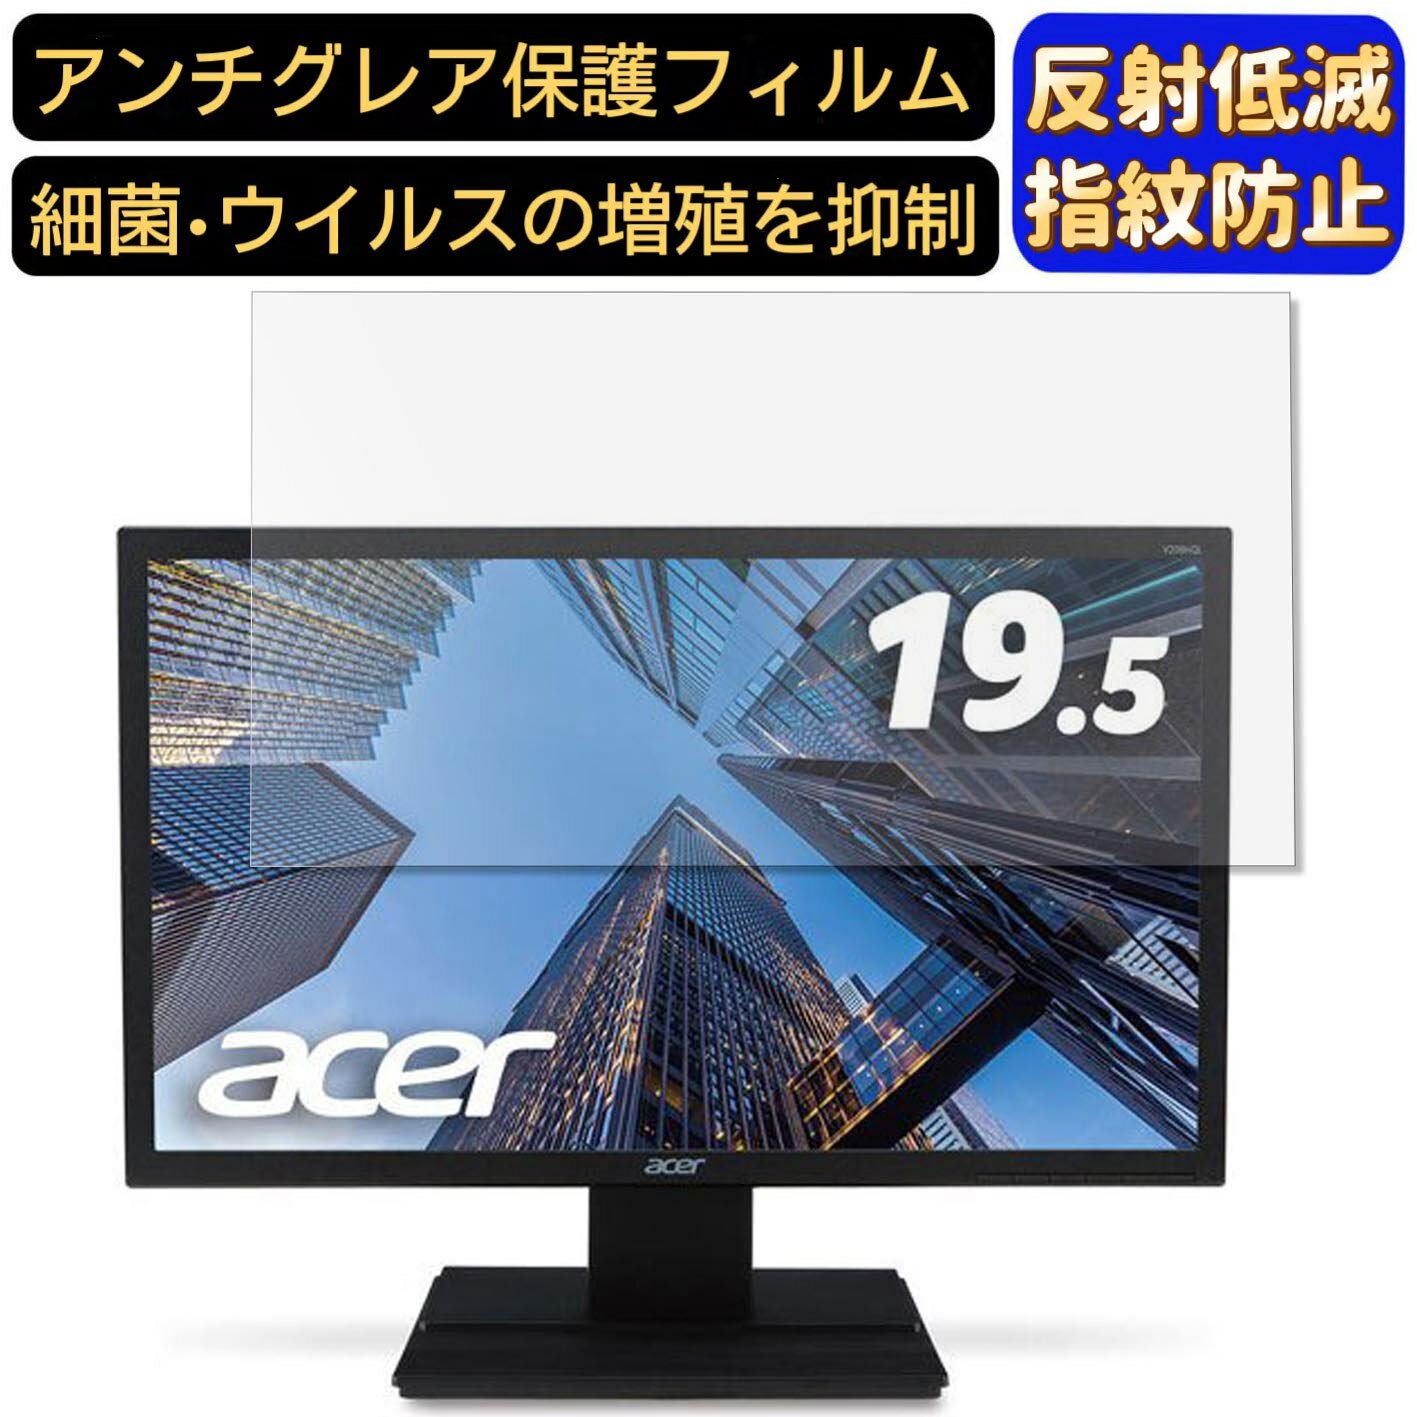 【ポイント2倍】Acer V206HQLbmdf (V6) 19.5